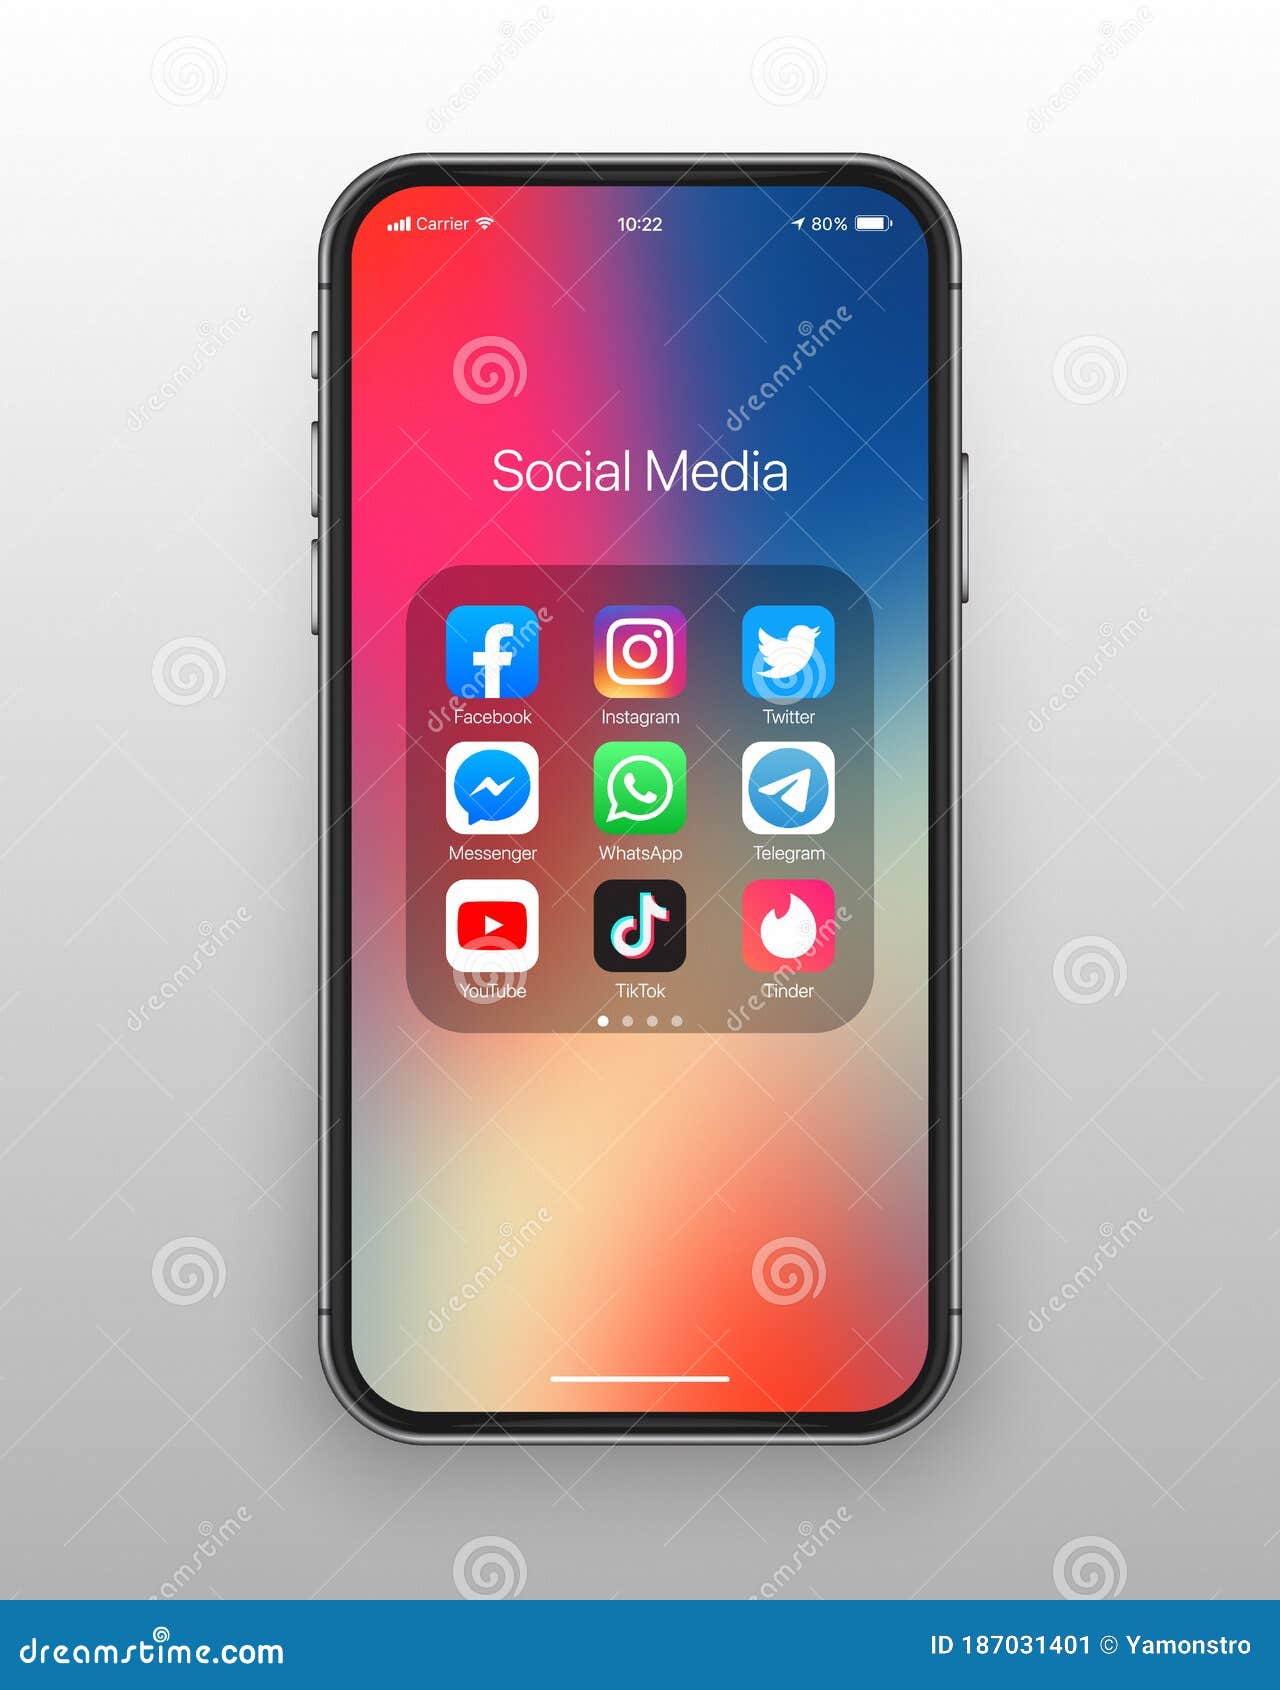 Kết nối với bạn bè qua mạng xã hội trên iPhone trở nên dễ dàng hơn bao giờ hết với biểu tượng xã hội độc đáo. Click để xem hình ảnh tuyệt đẹp về tính năng này! 